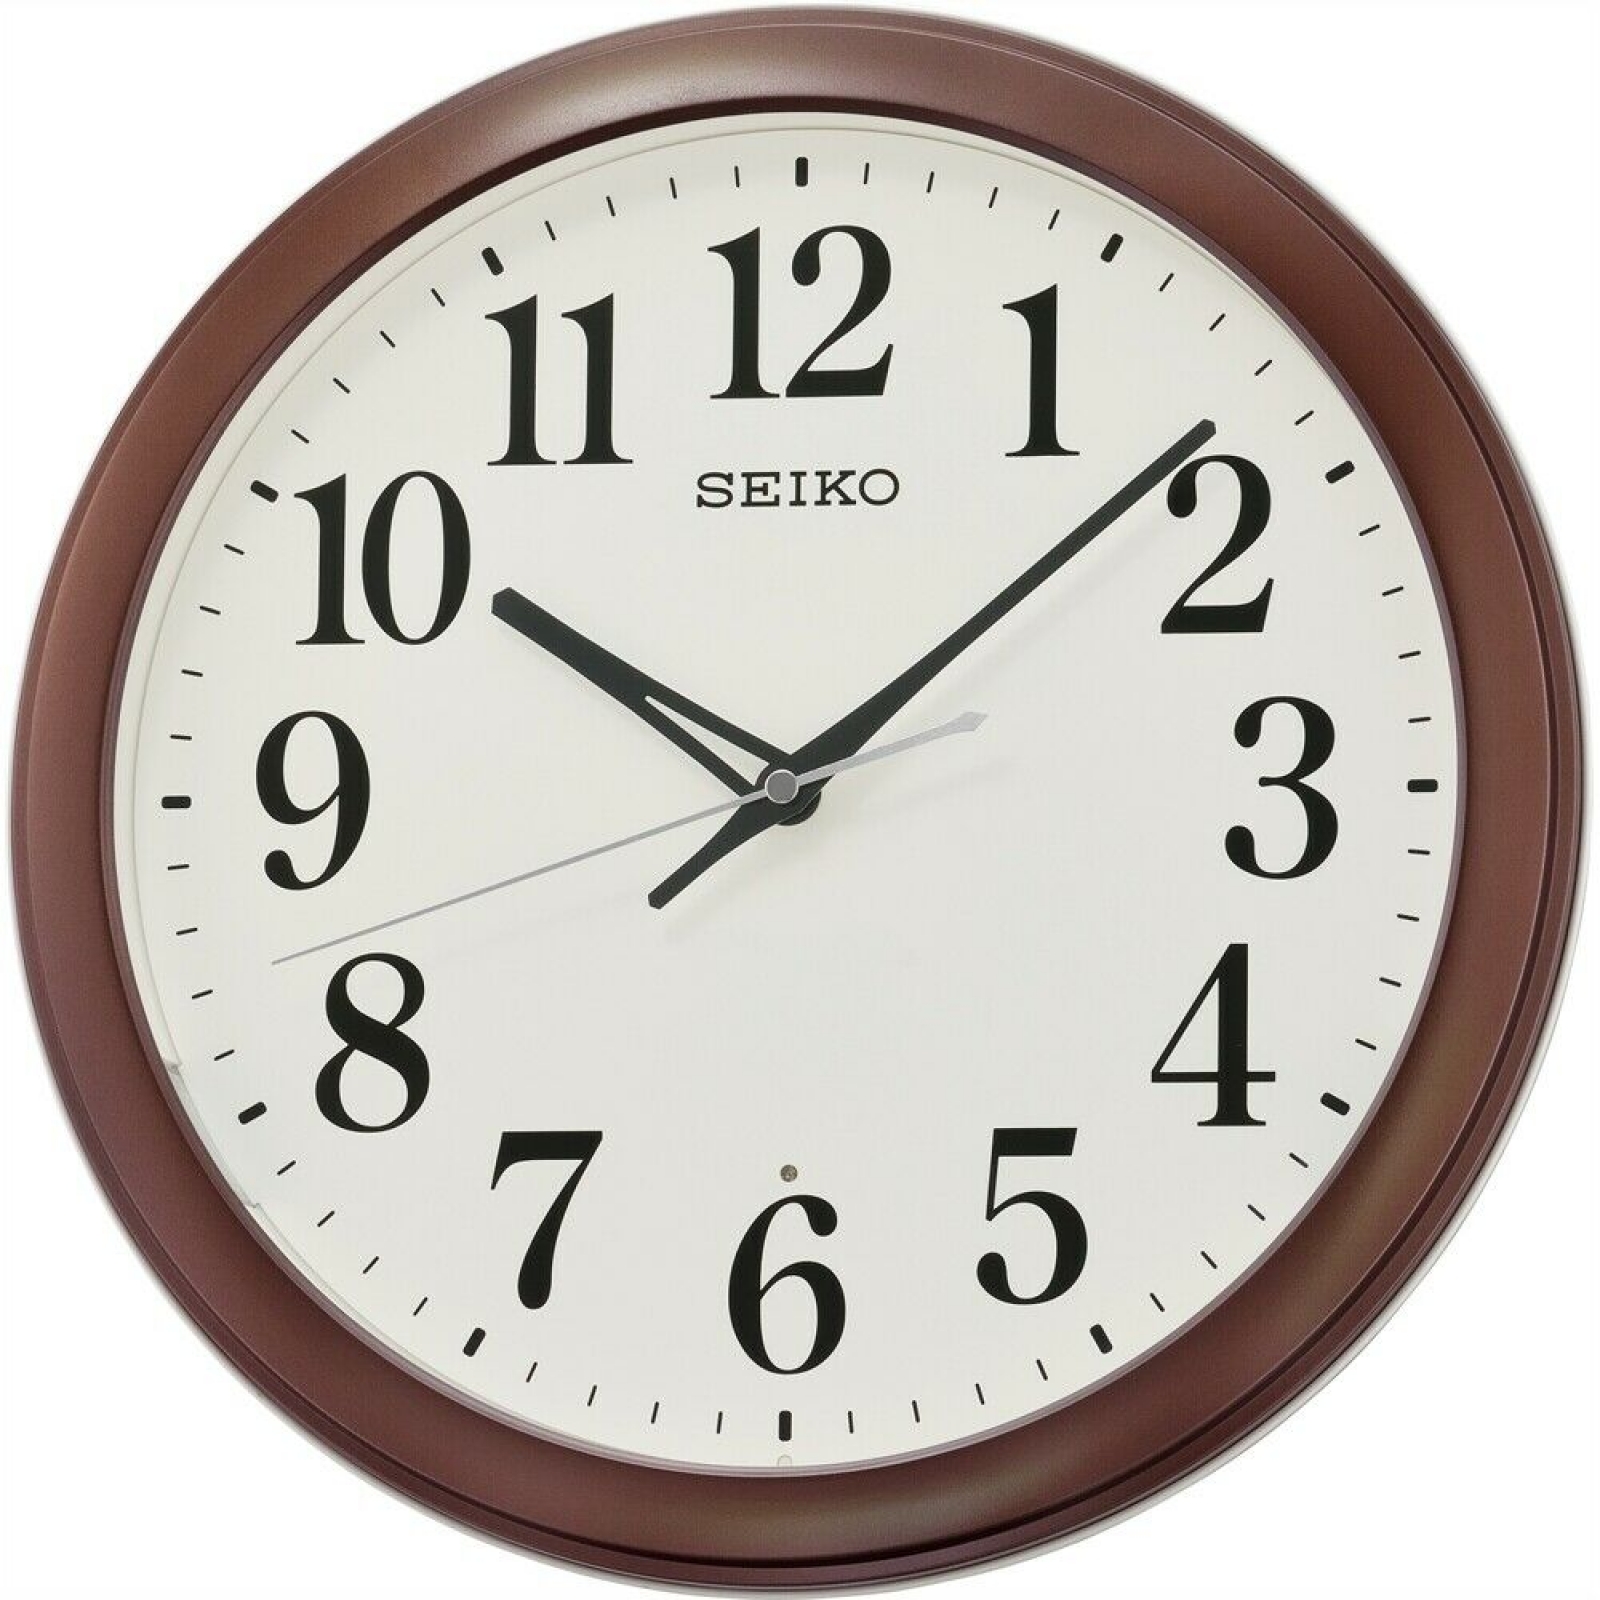 Модели часов настенных. Rhythm cmh726nr06. Настенные часы Seiko qxa528bn. Настенные часы Seiko qxa525kn. Настенные часы Seiko qxa155b.